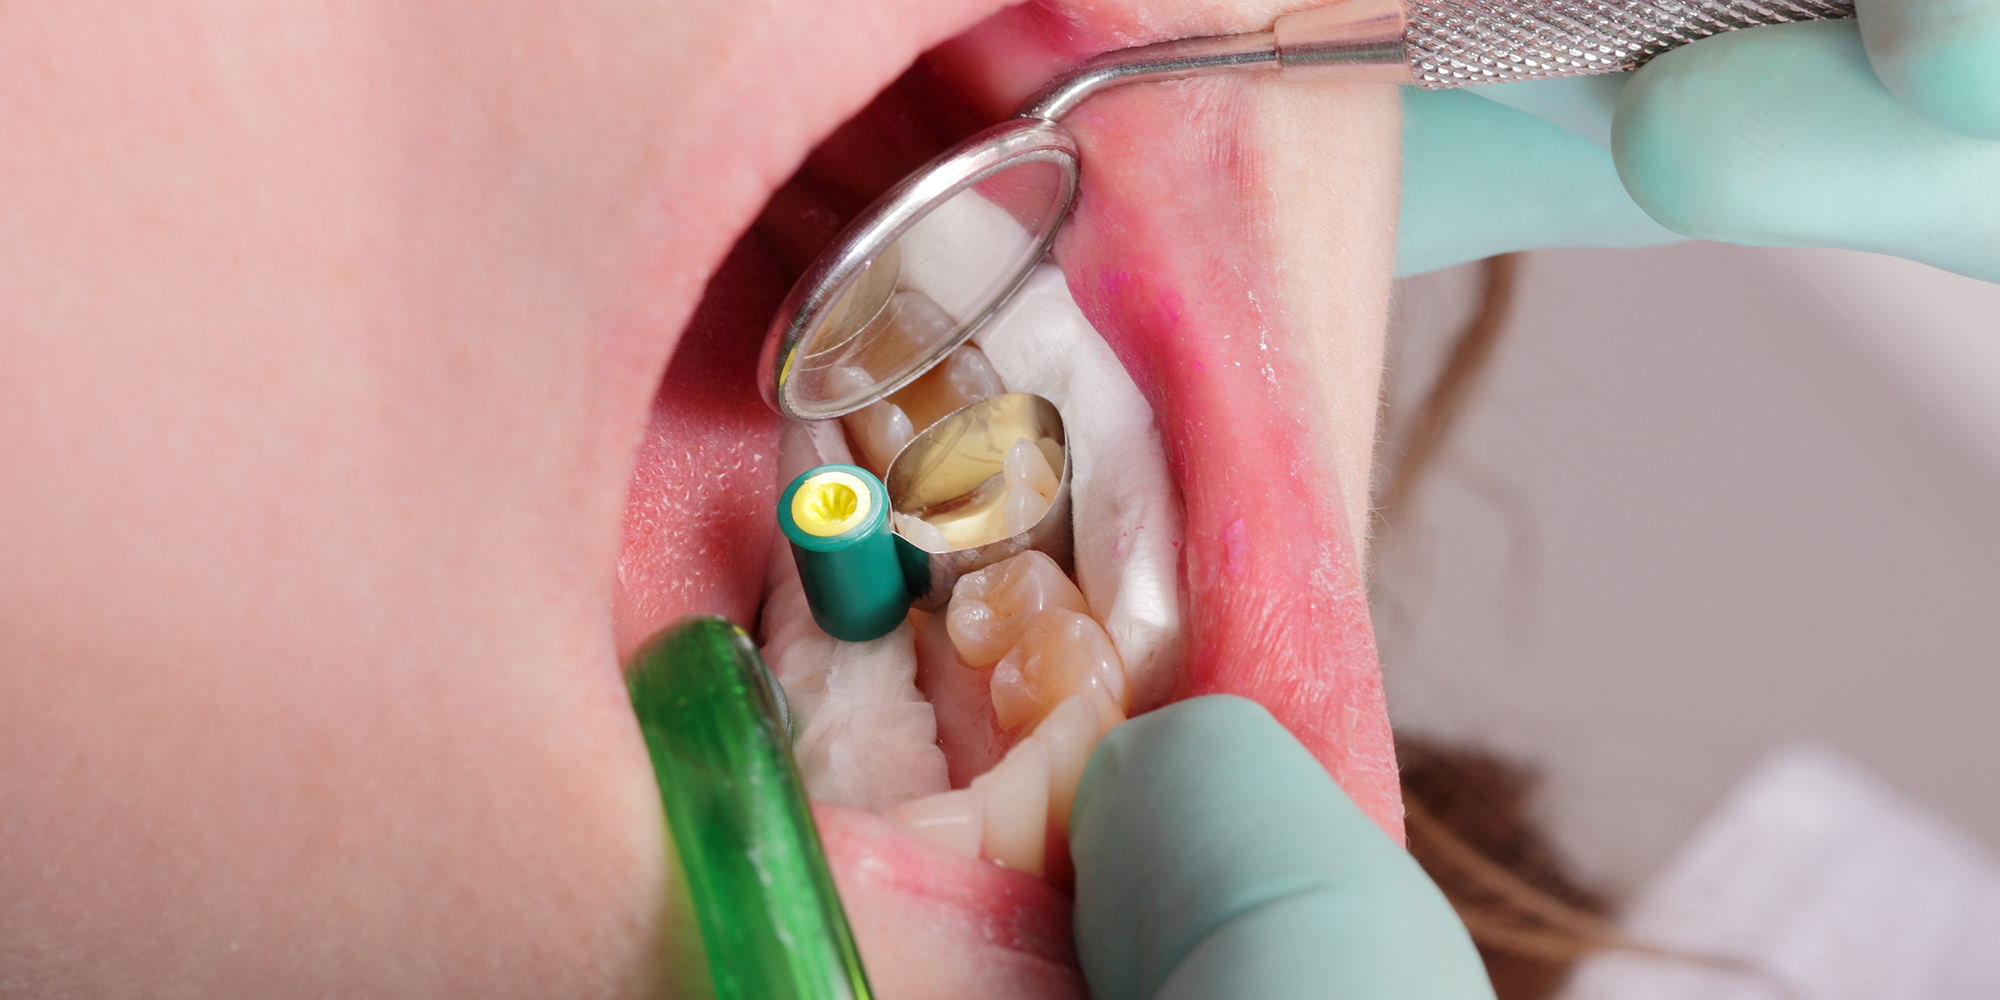 Hechten van glasionomeercement en adhesieven aan voorbehandeld dentine